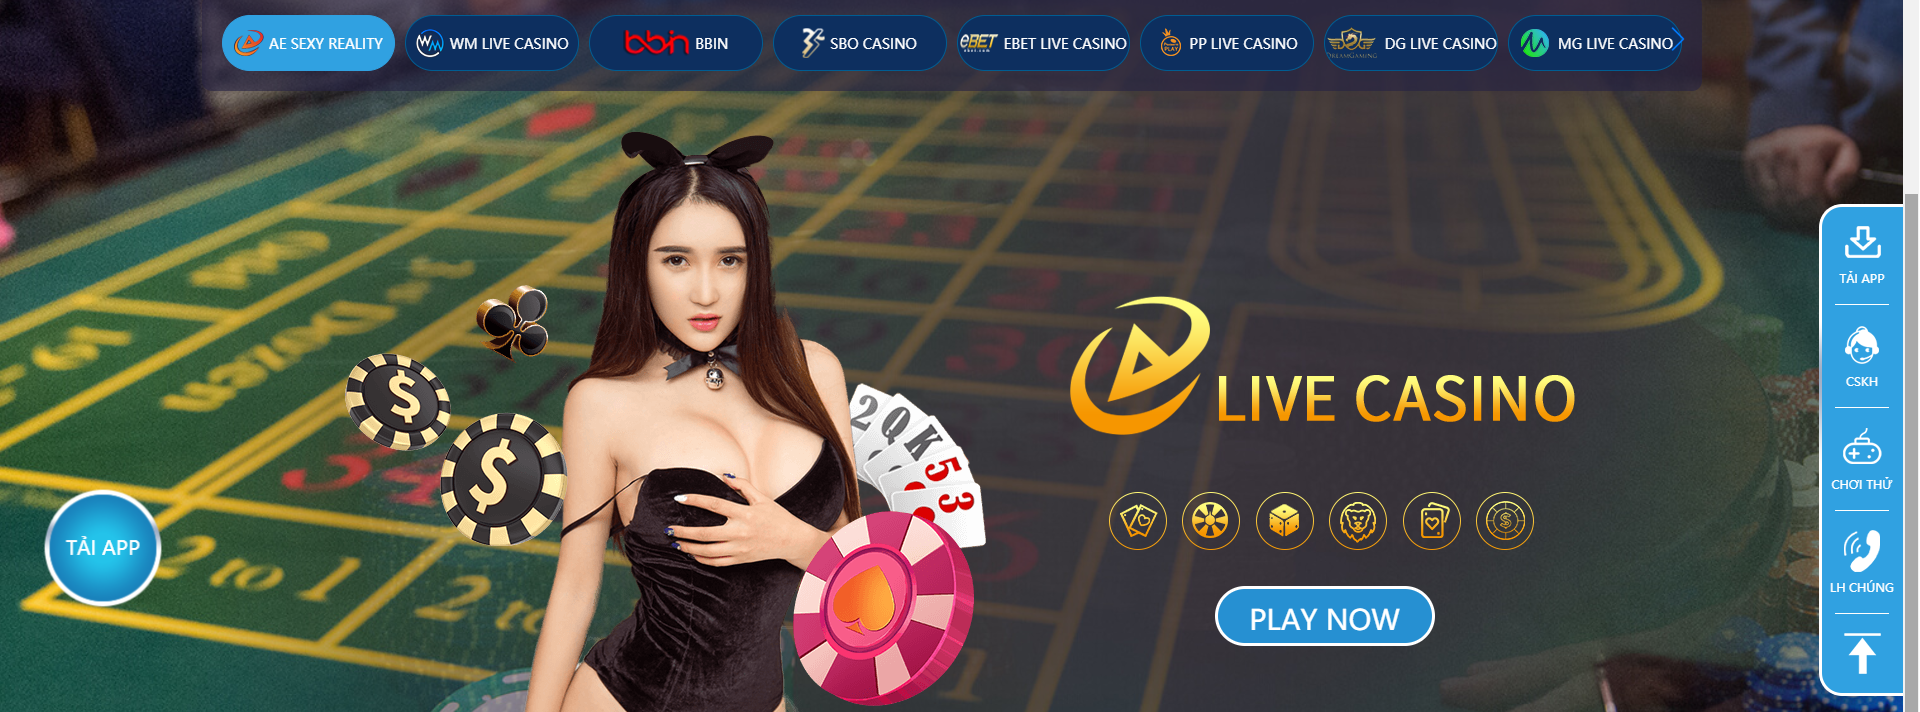 Tham gia các sảnh Casino đa dạng thể loại tò chơi